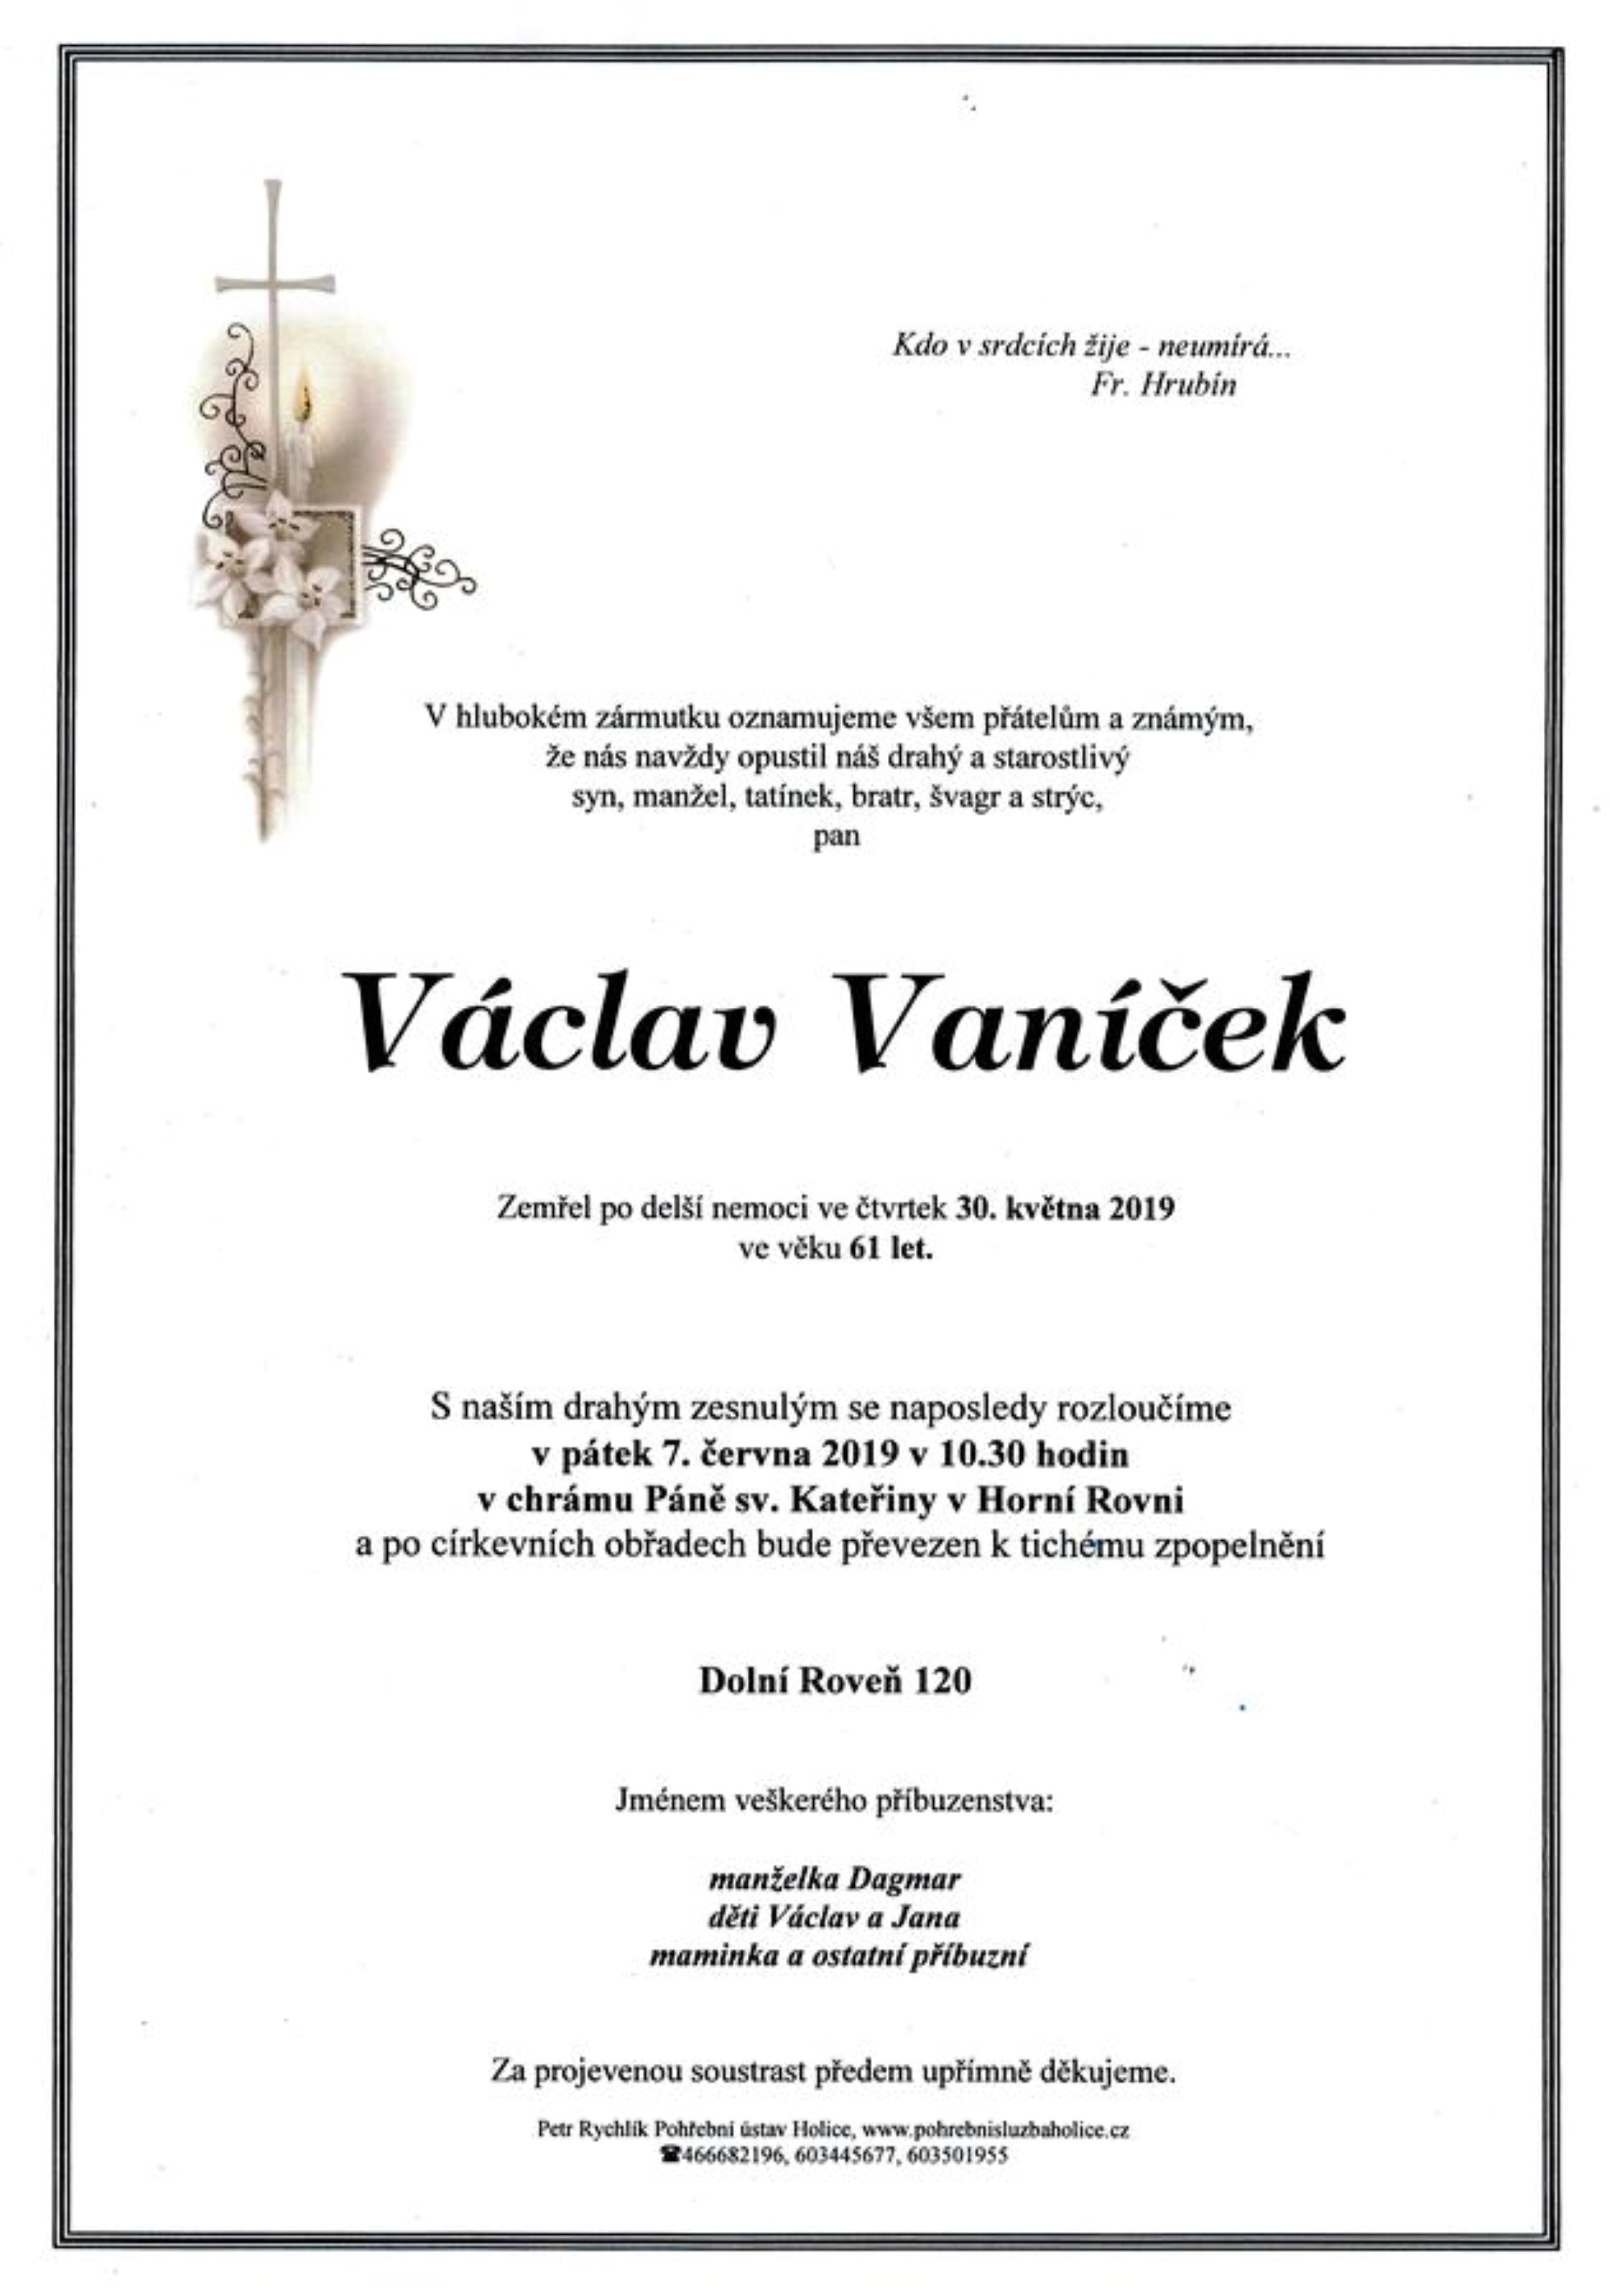 Václav Vaníček